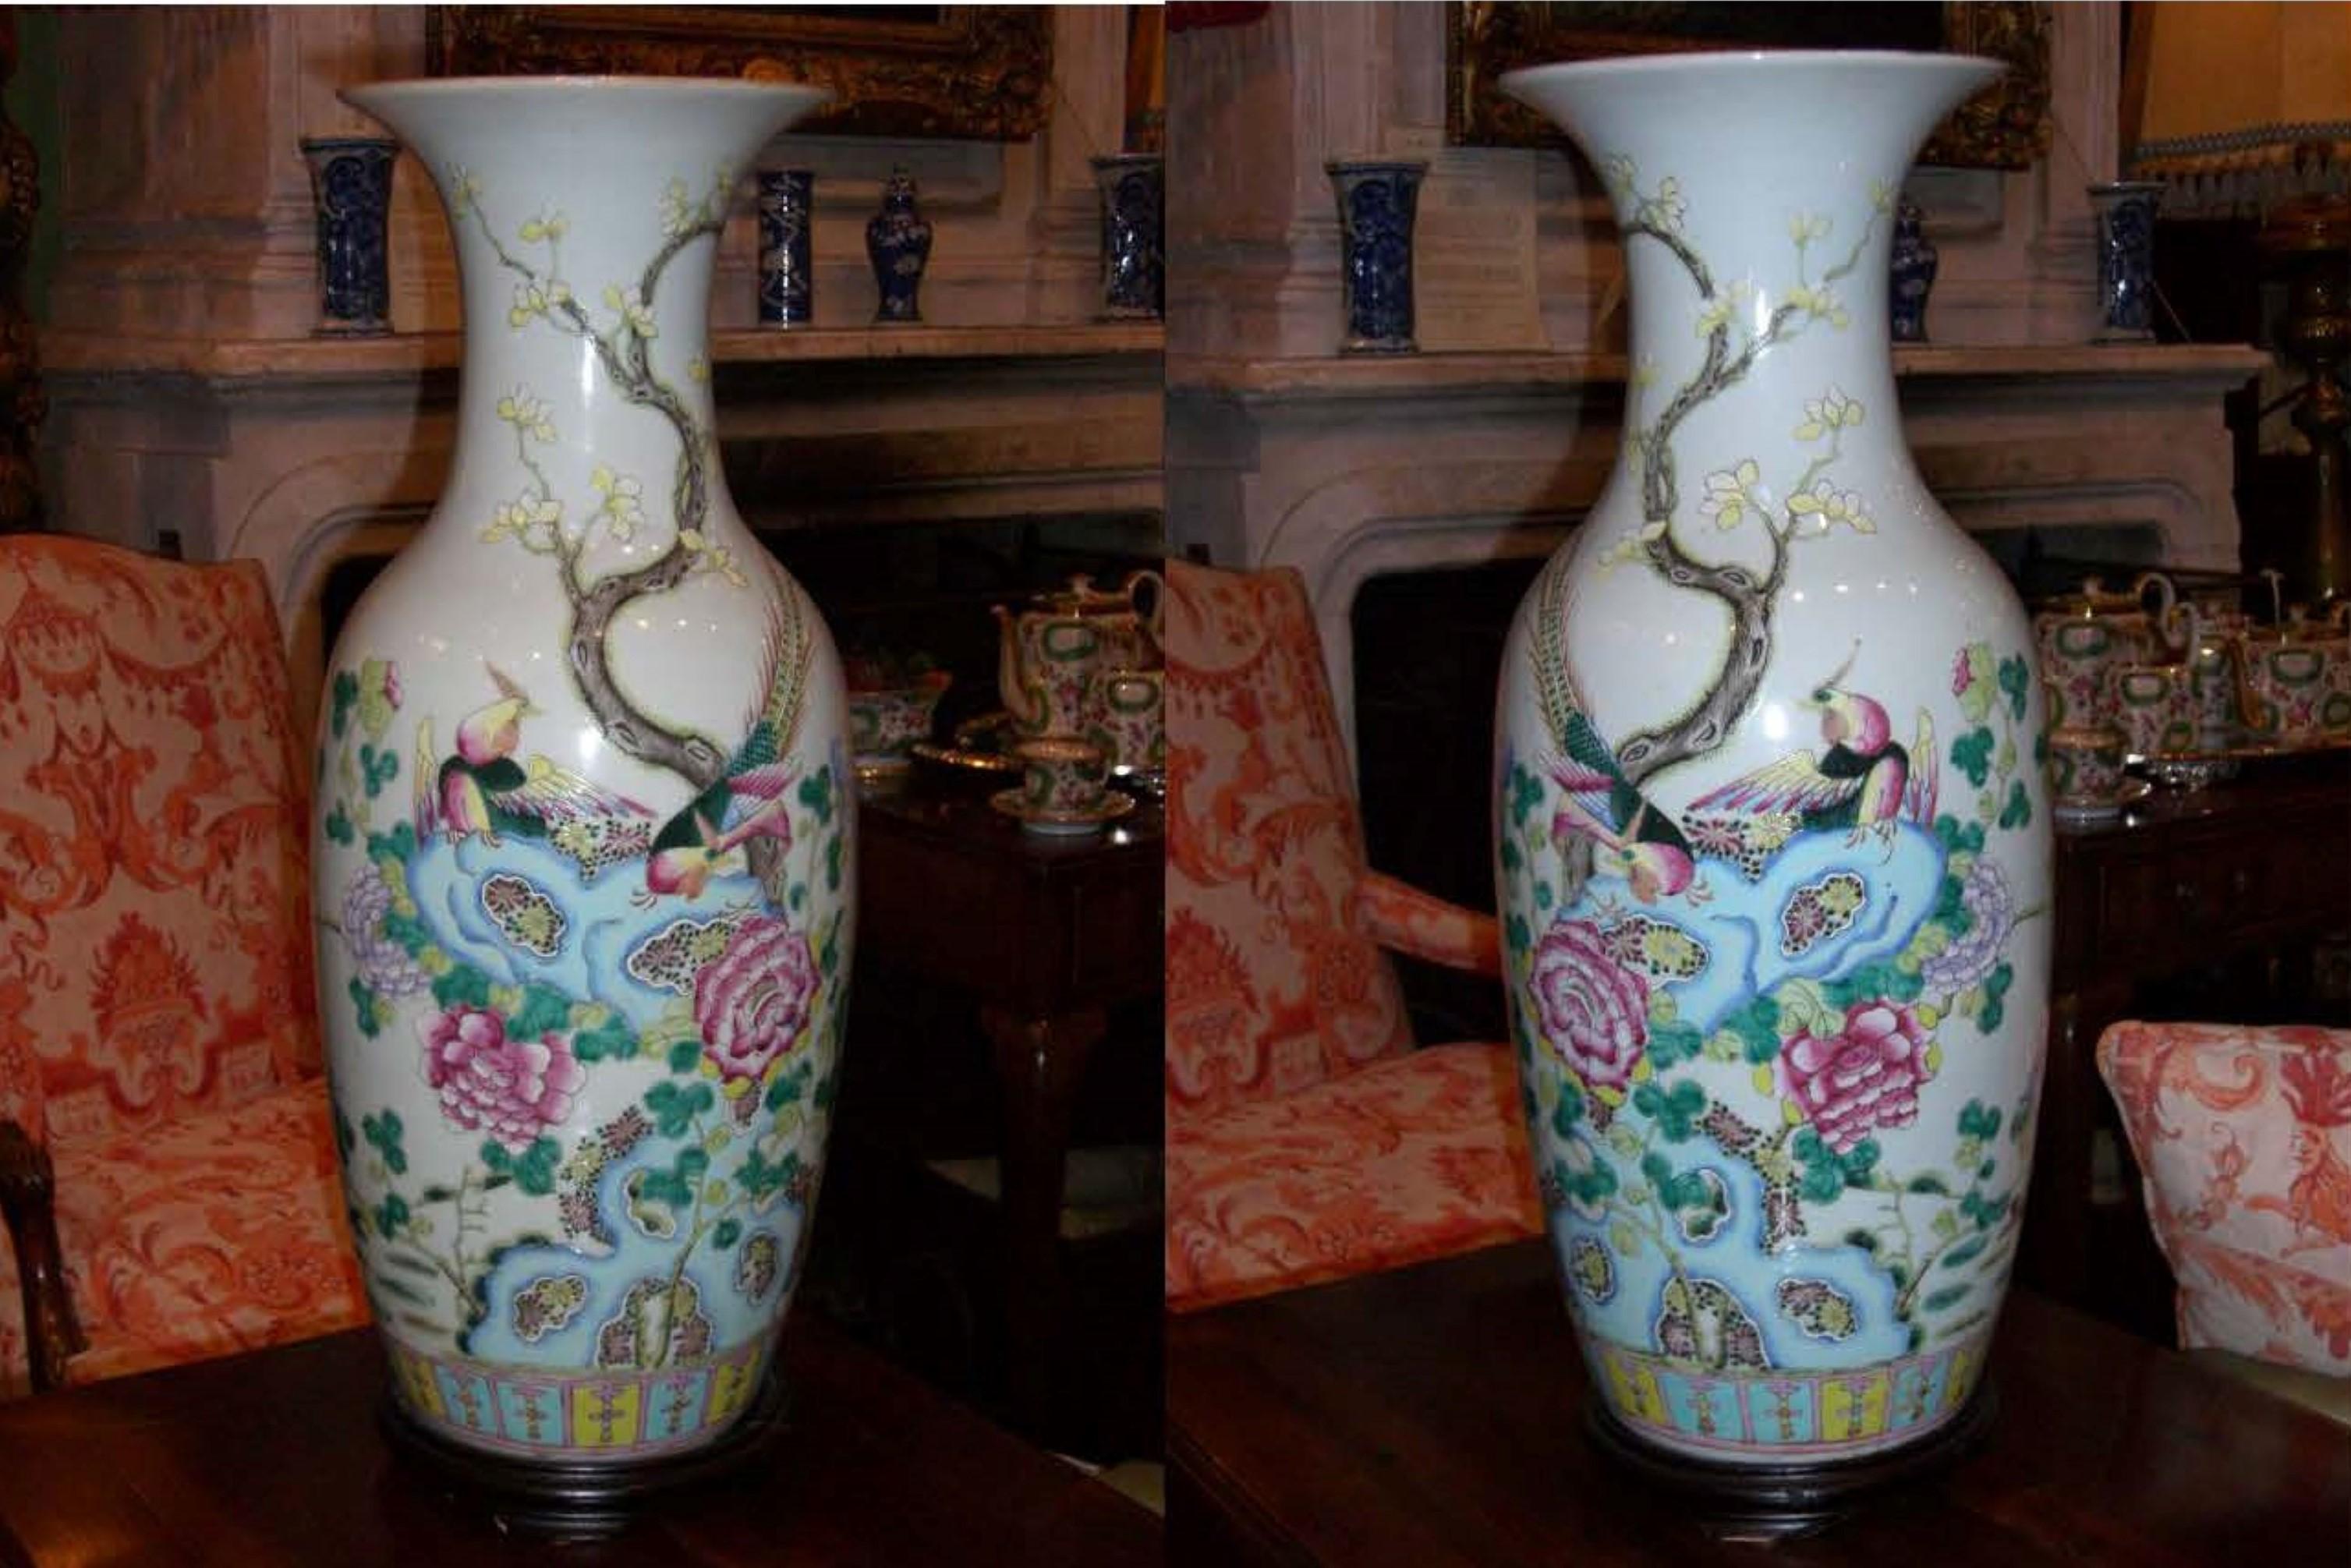 Très belle paire de vases en porcelaine chinoise de la dynastie Tao Kuang vers la 2ème moitié du 19ème siècle. Papillons colorés détaillés et Cigogne au bord du lac et oiseaux de paradis.
Il pourrait avoir l'air étonnant comme une pièce centrale sur